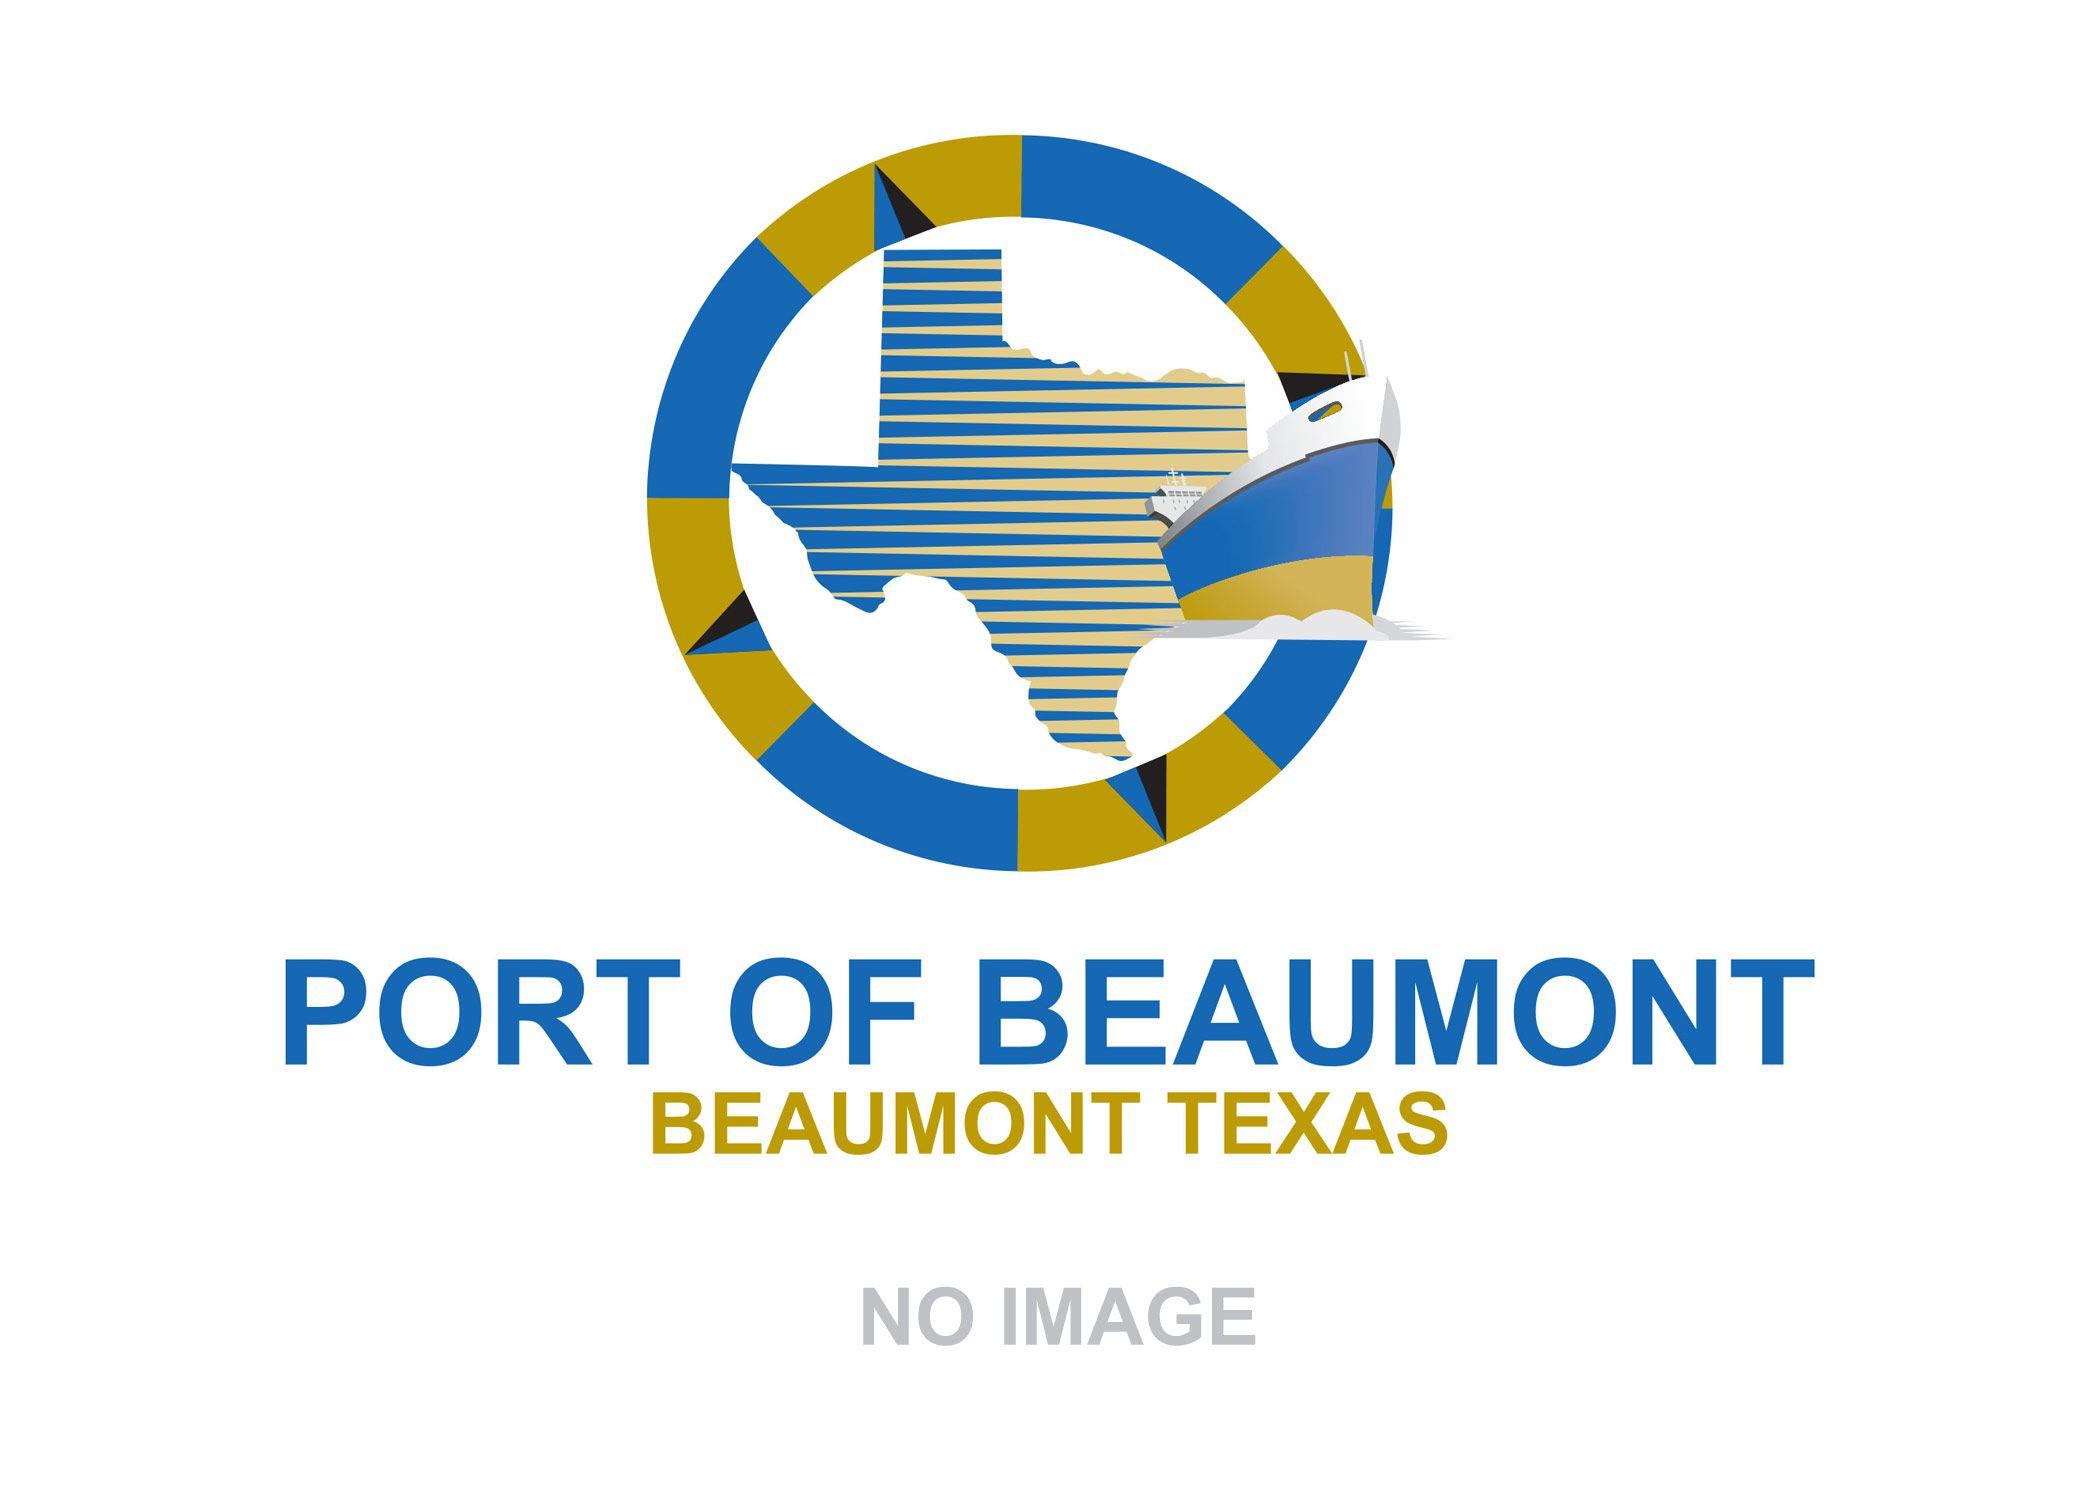 Blue Beaumont Logo - Port Of Beaumont